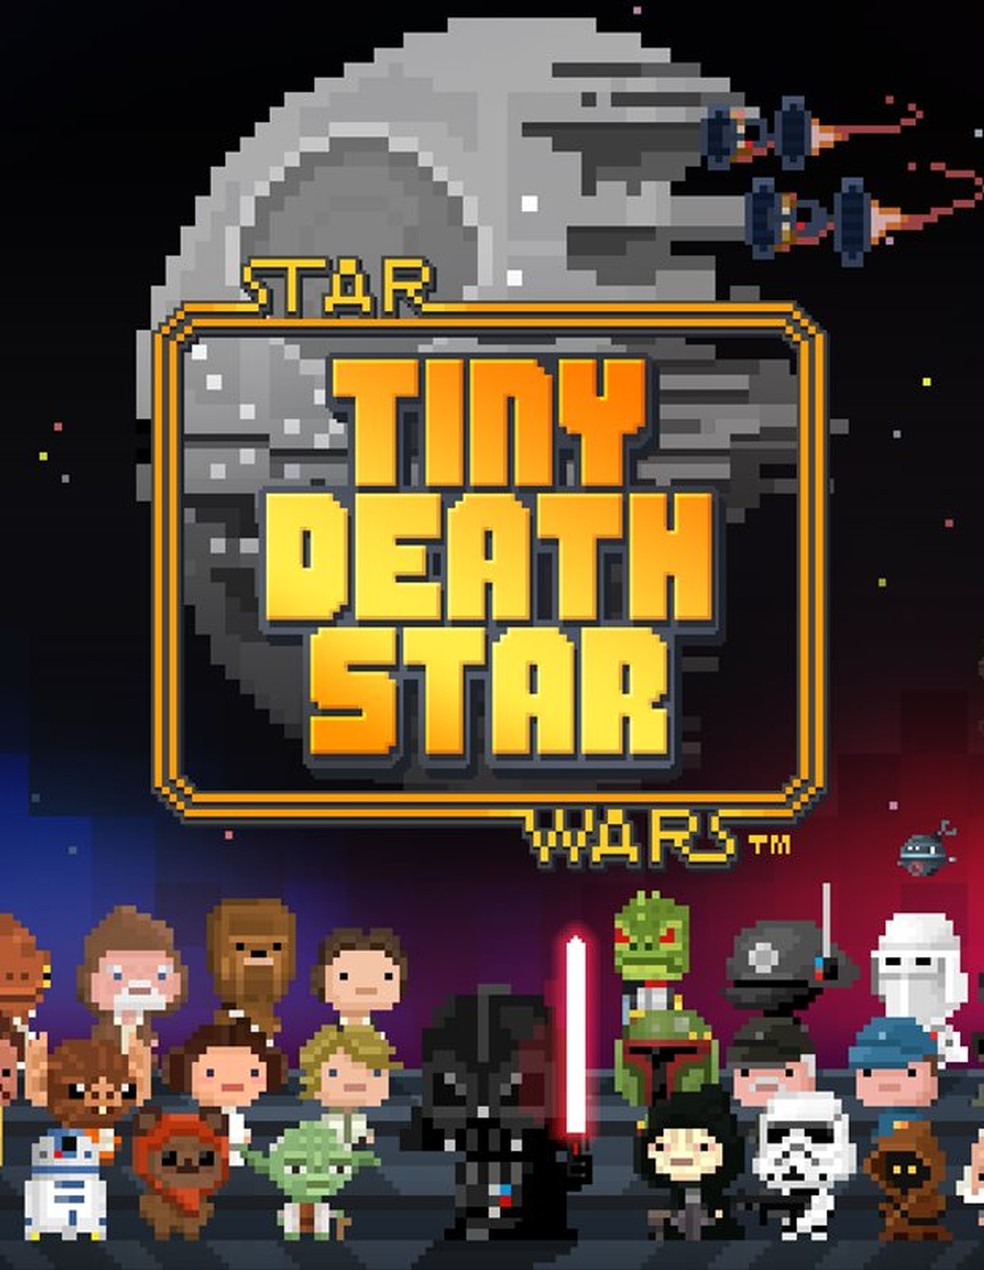 Jogos Mortais' bate RECORDE inusitado de 'Star Wars' - CinePOP